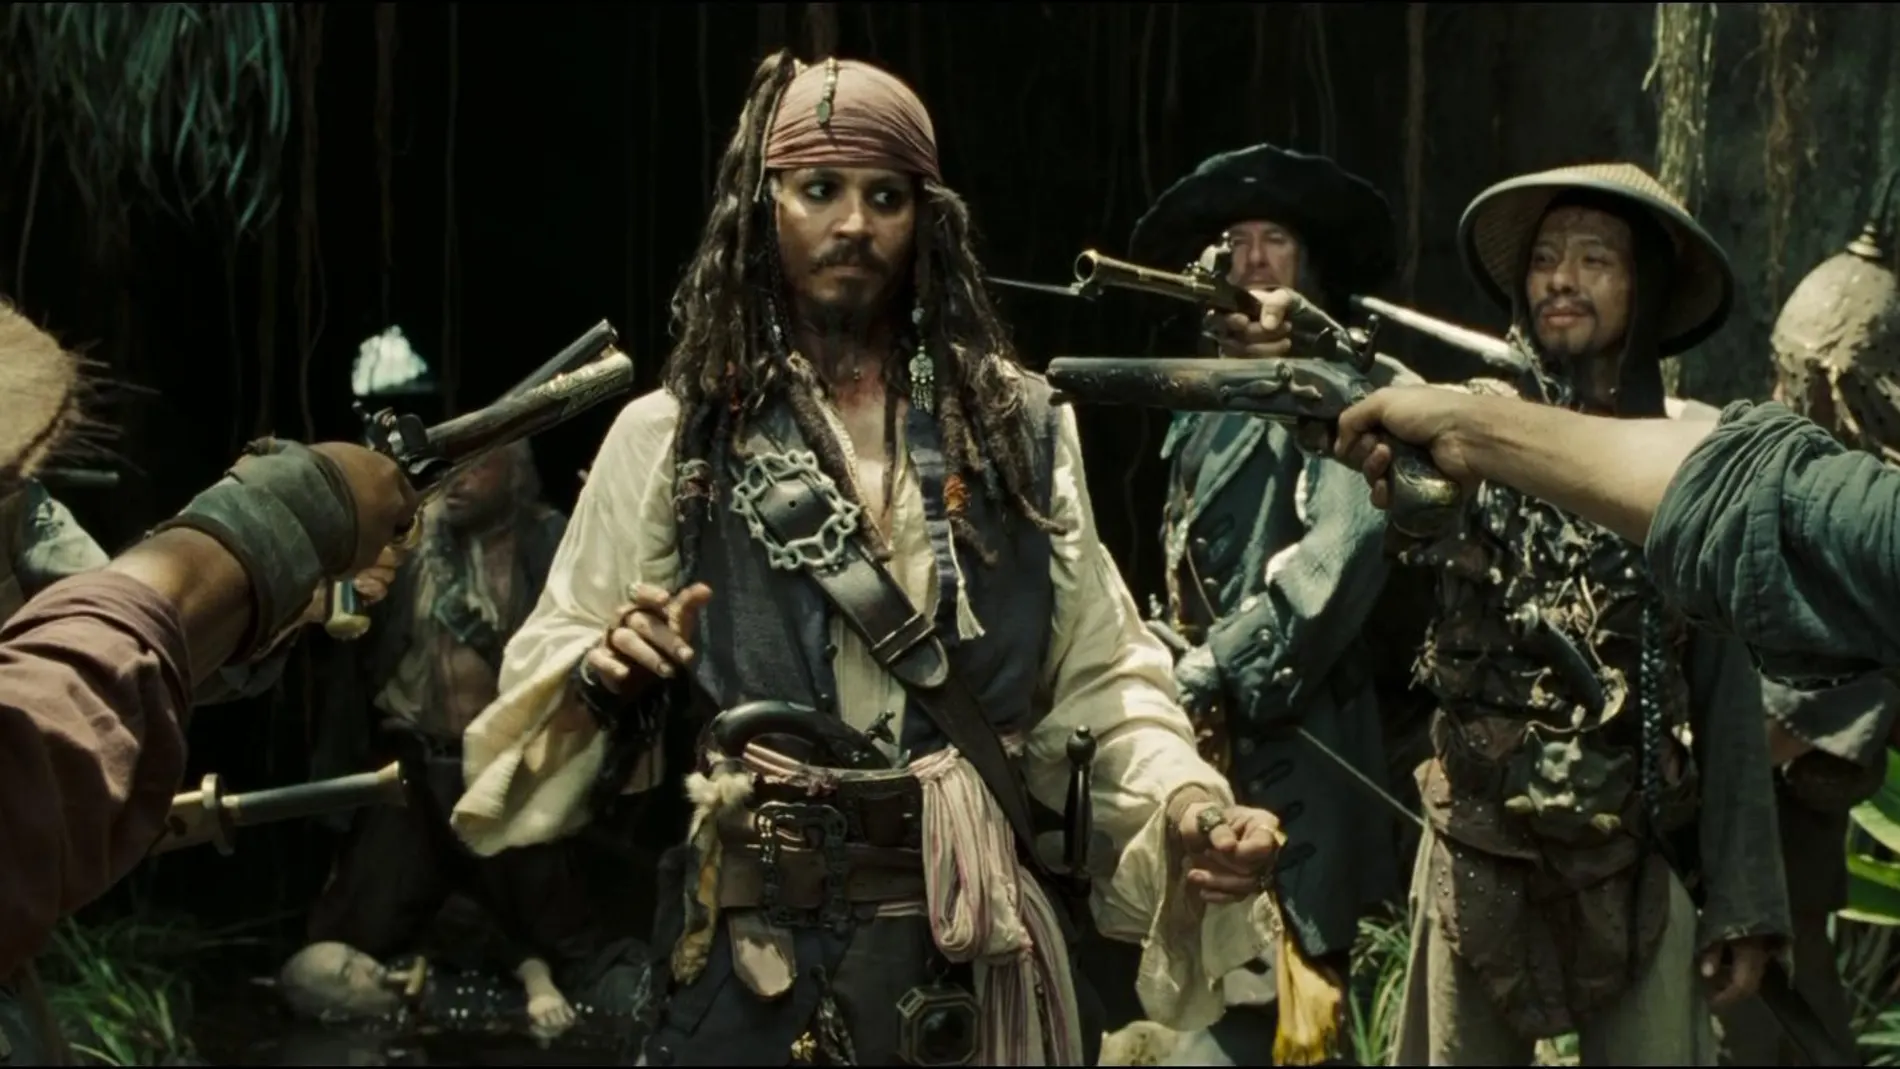 Jack Sparrow (Johnny Depp), en el centro, protagoniza la famosa saga cinematográfica «Piratas del Caribe», cuyos derechos pertenecen a Disney